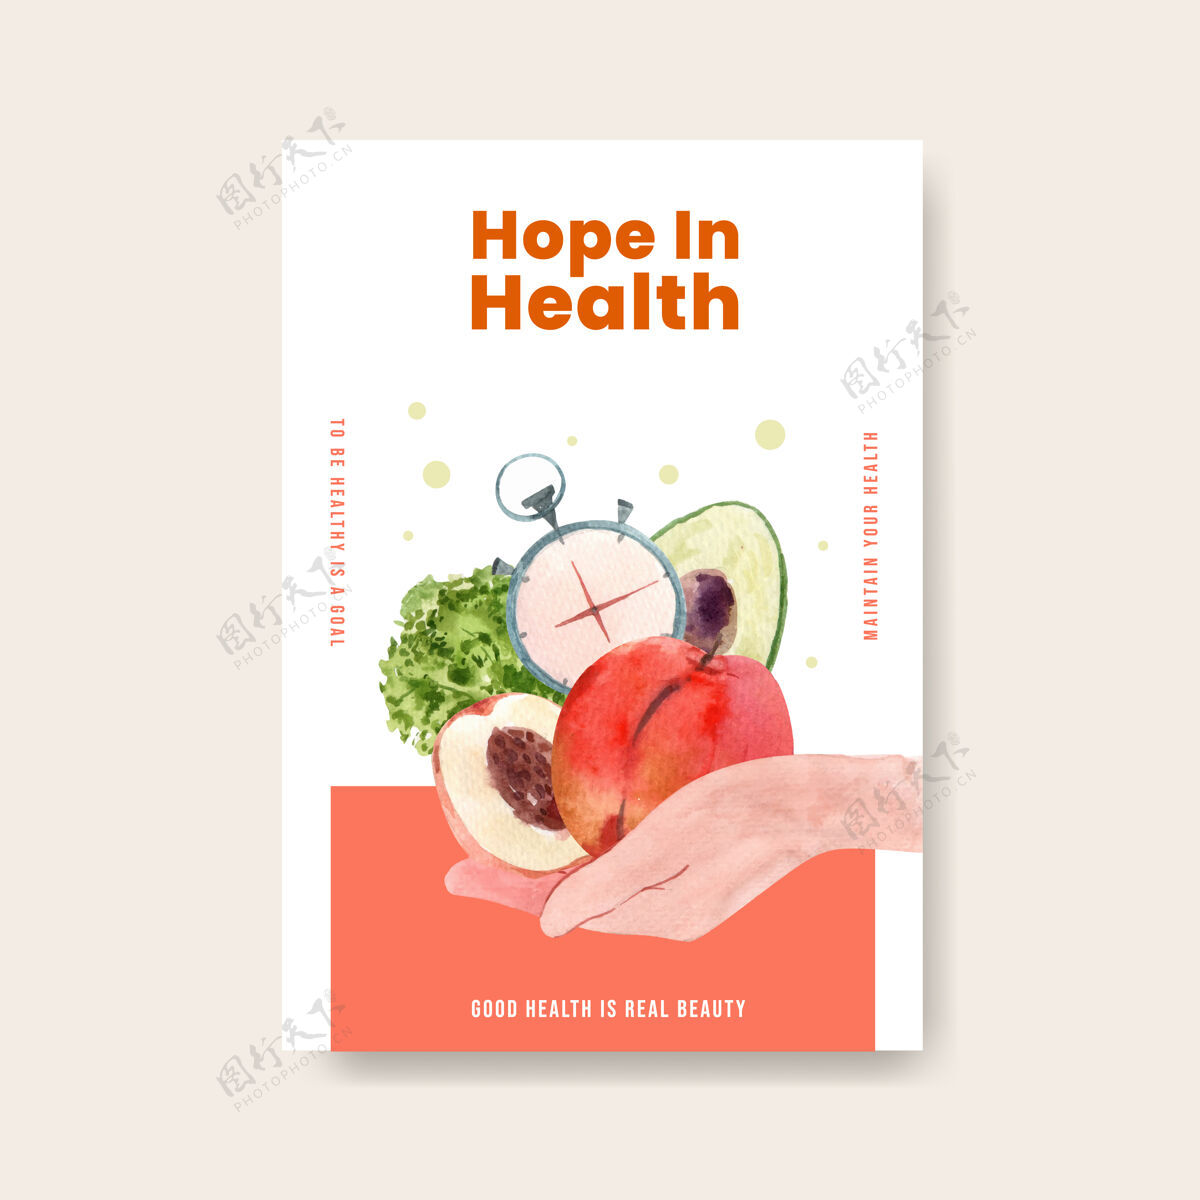 营销世界卫生日概念设计海报模板宣传册水彩插画水彩水果生活方式